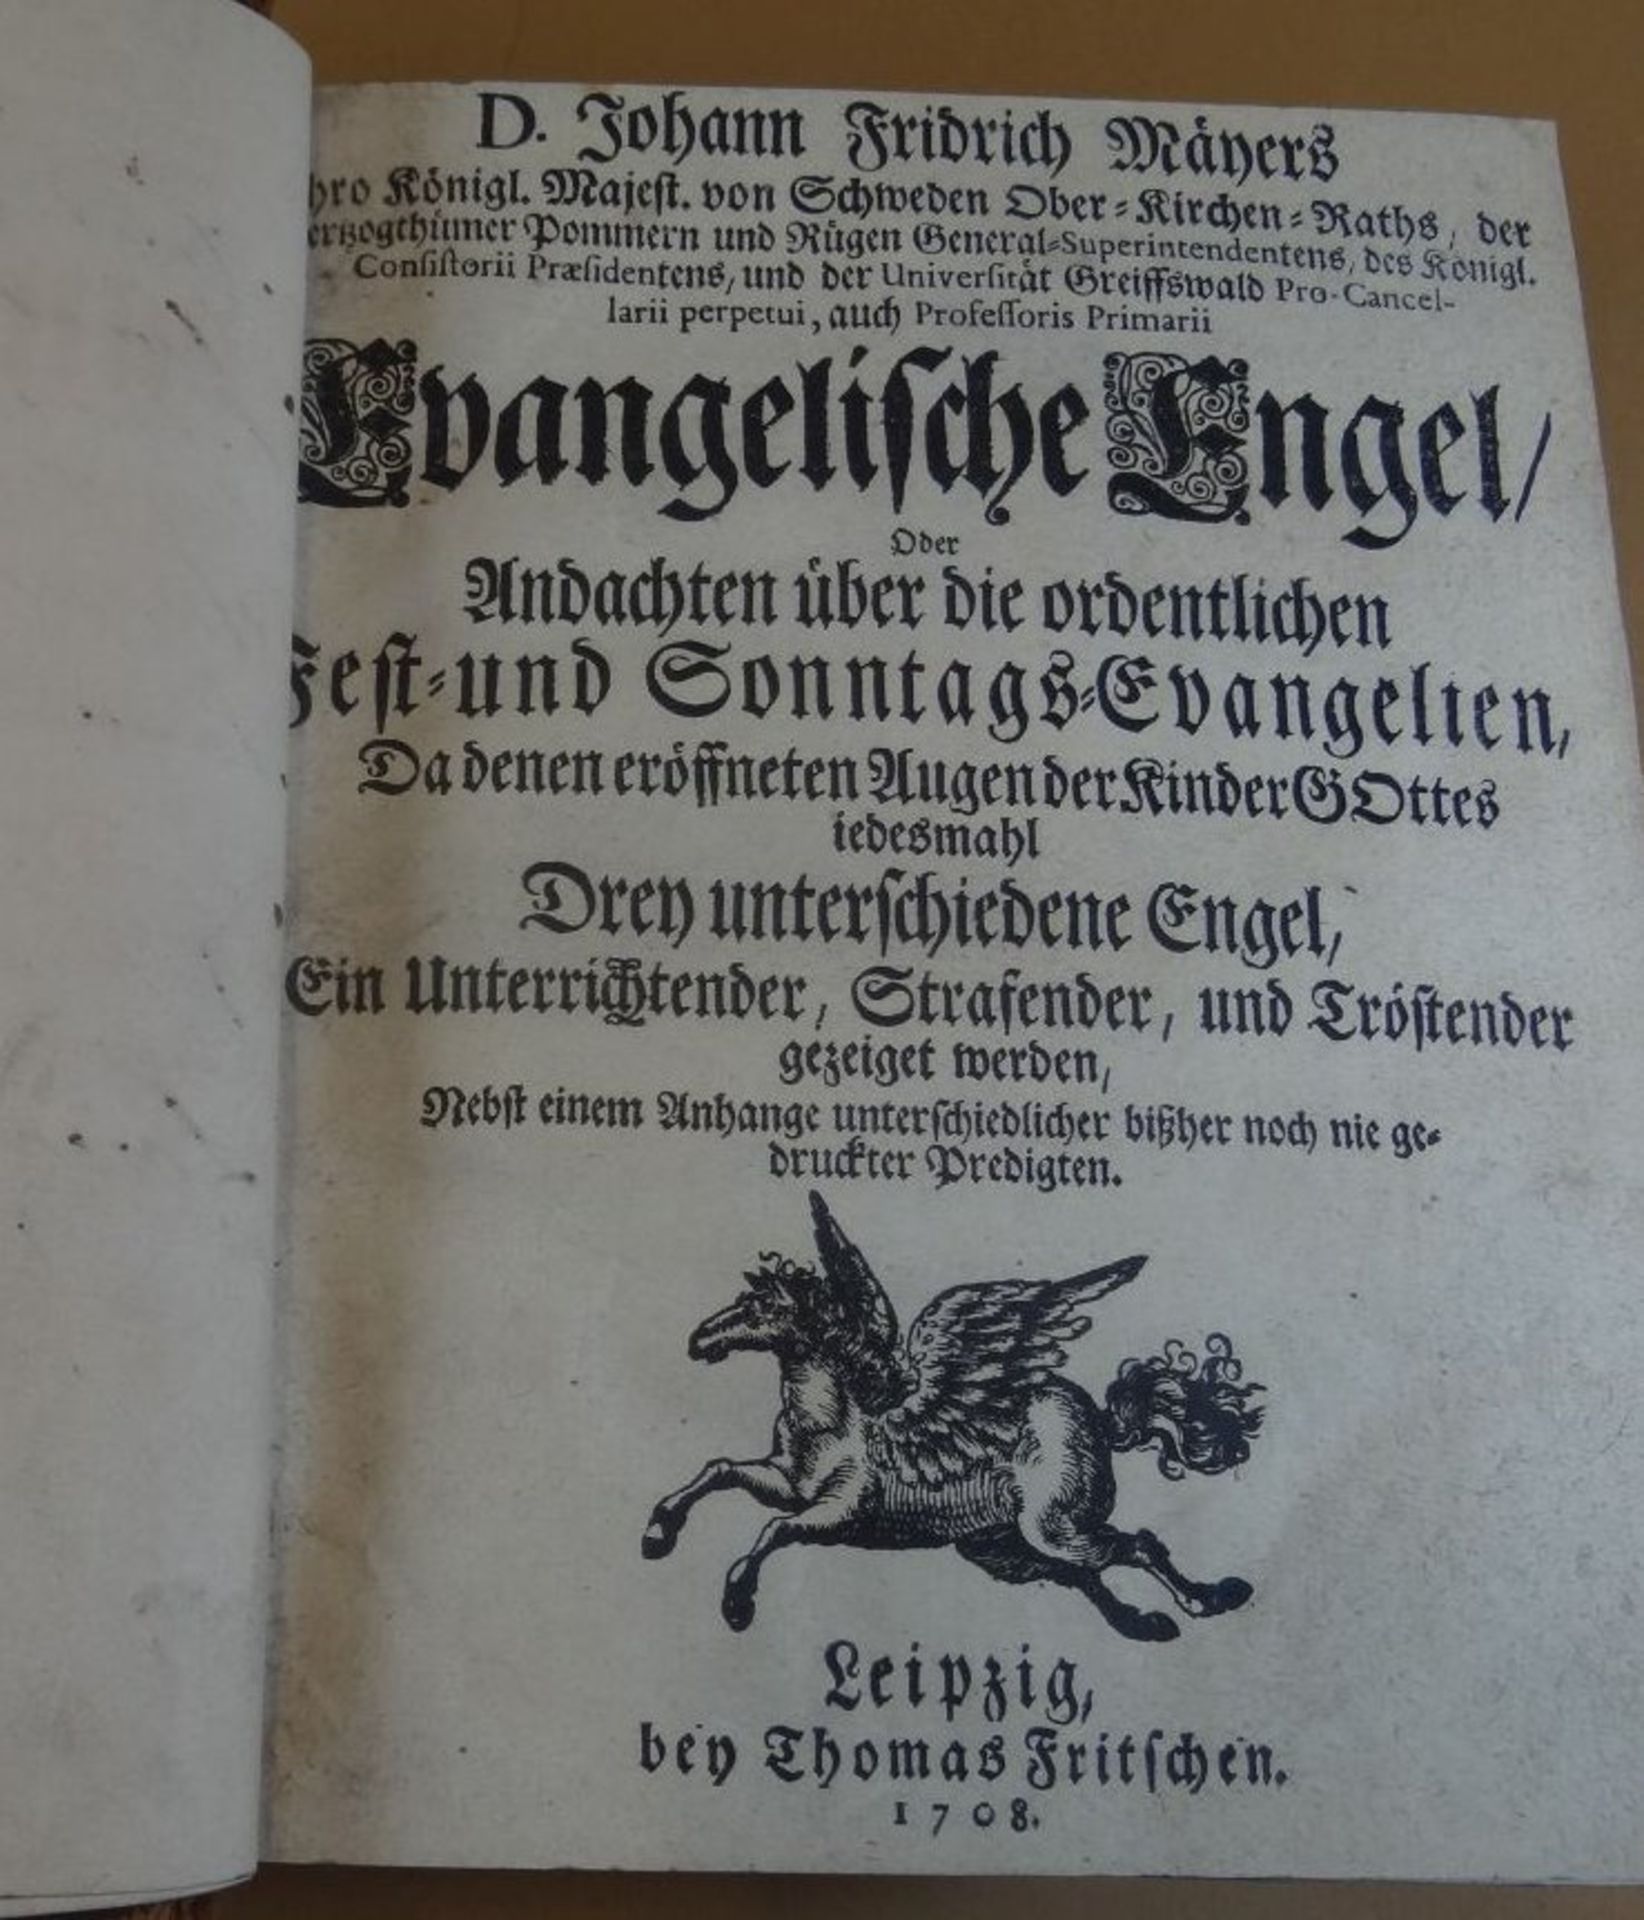 Dr.J.F. Mayers "Evangelische Engel" Andachtenbuch, Leipzig 1708, Einband der Zeit, tw. mit handschr